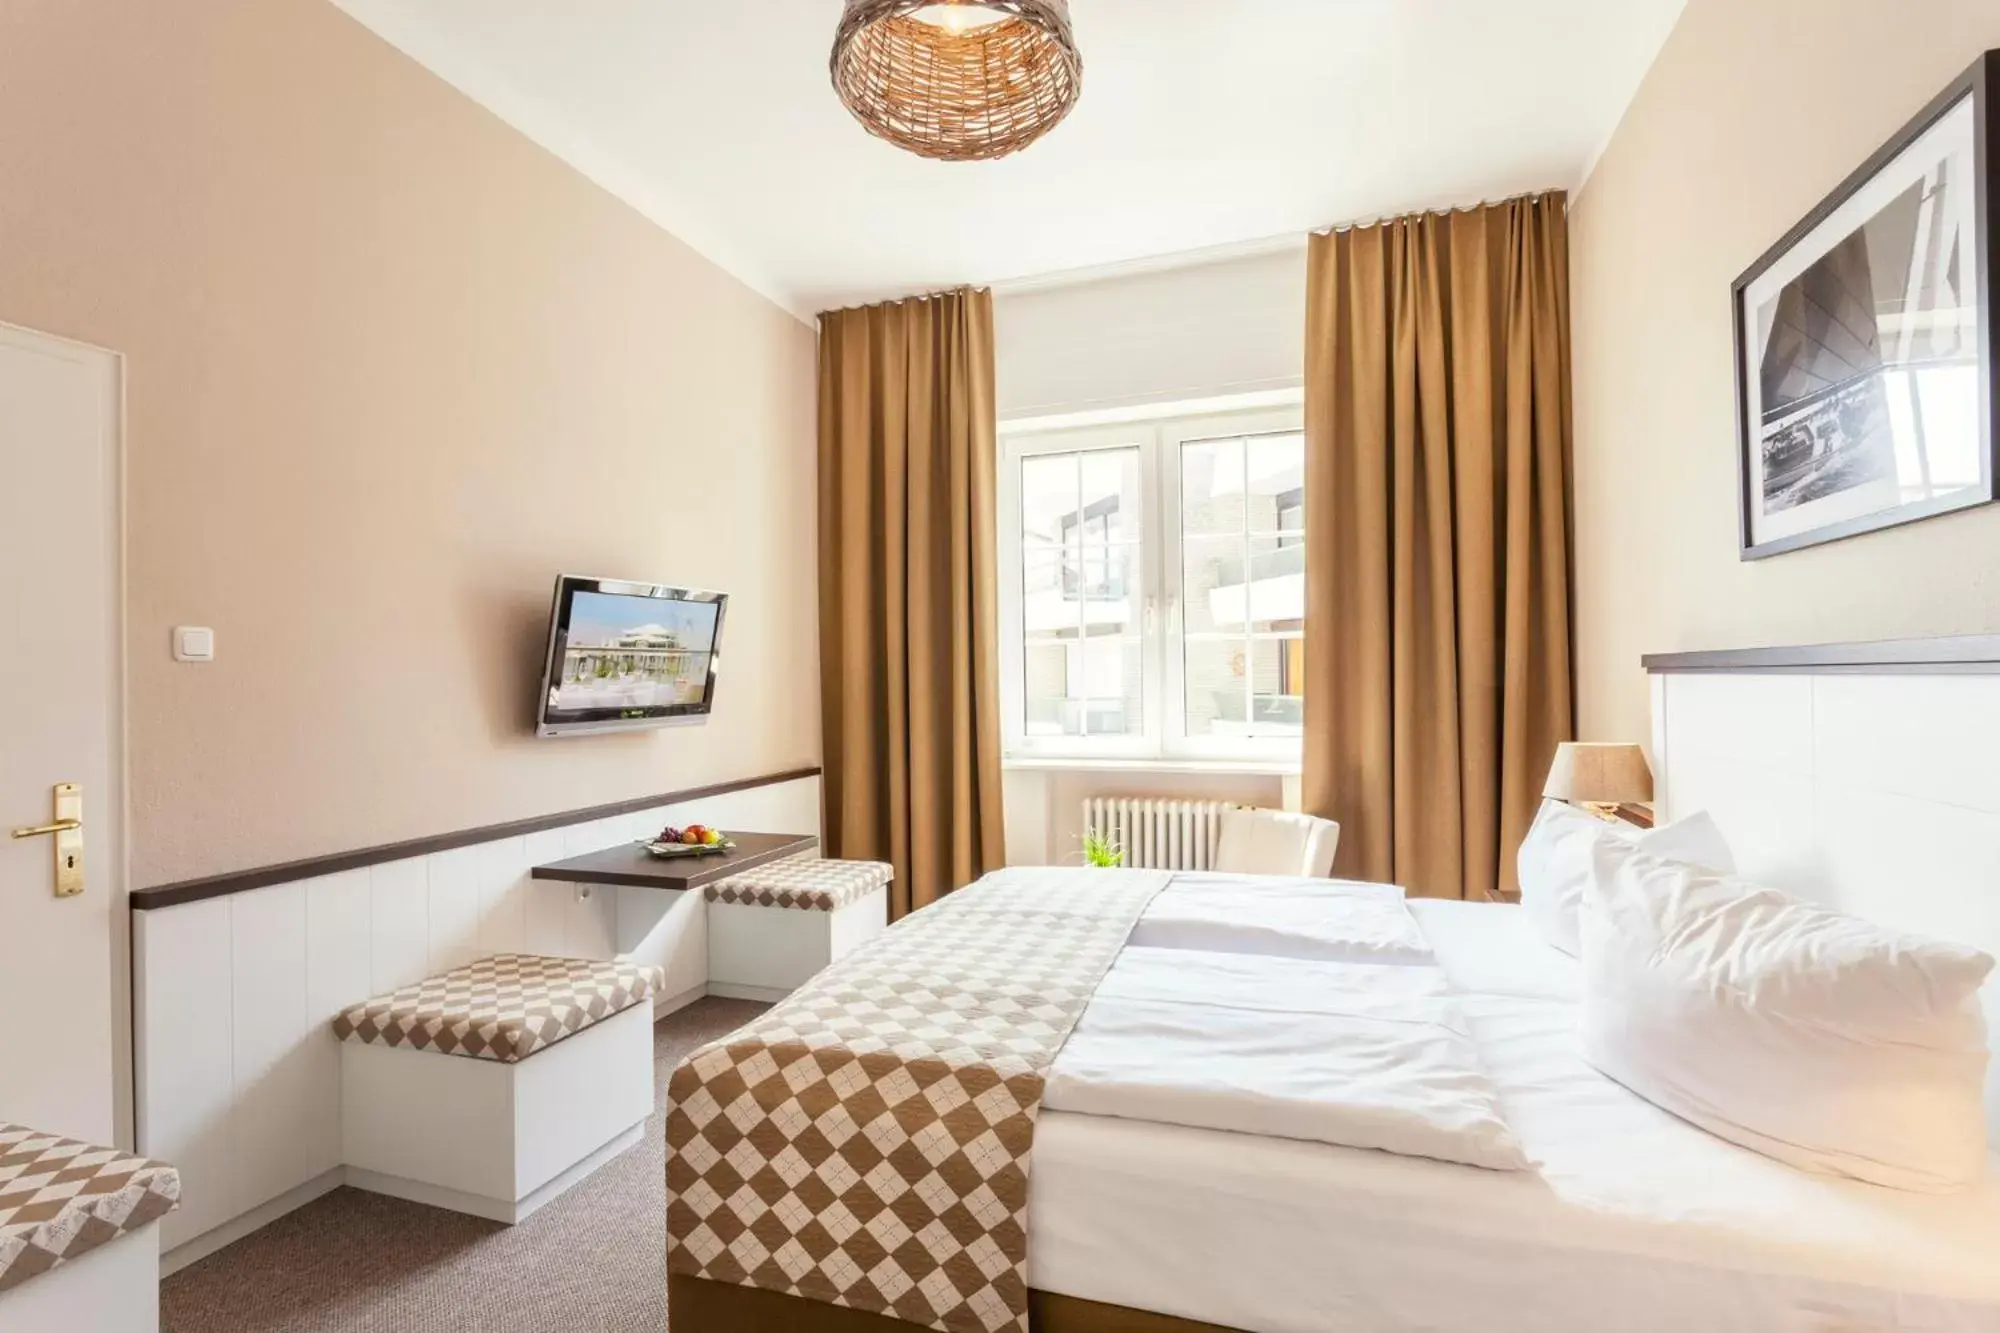 Bed, Room Photo in Hotel Strandschlösschen